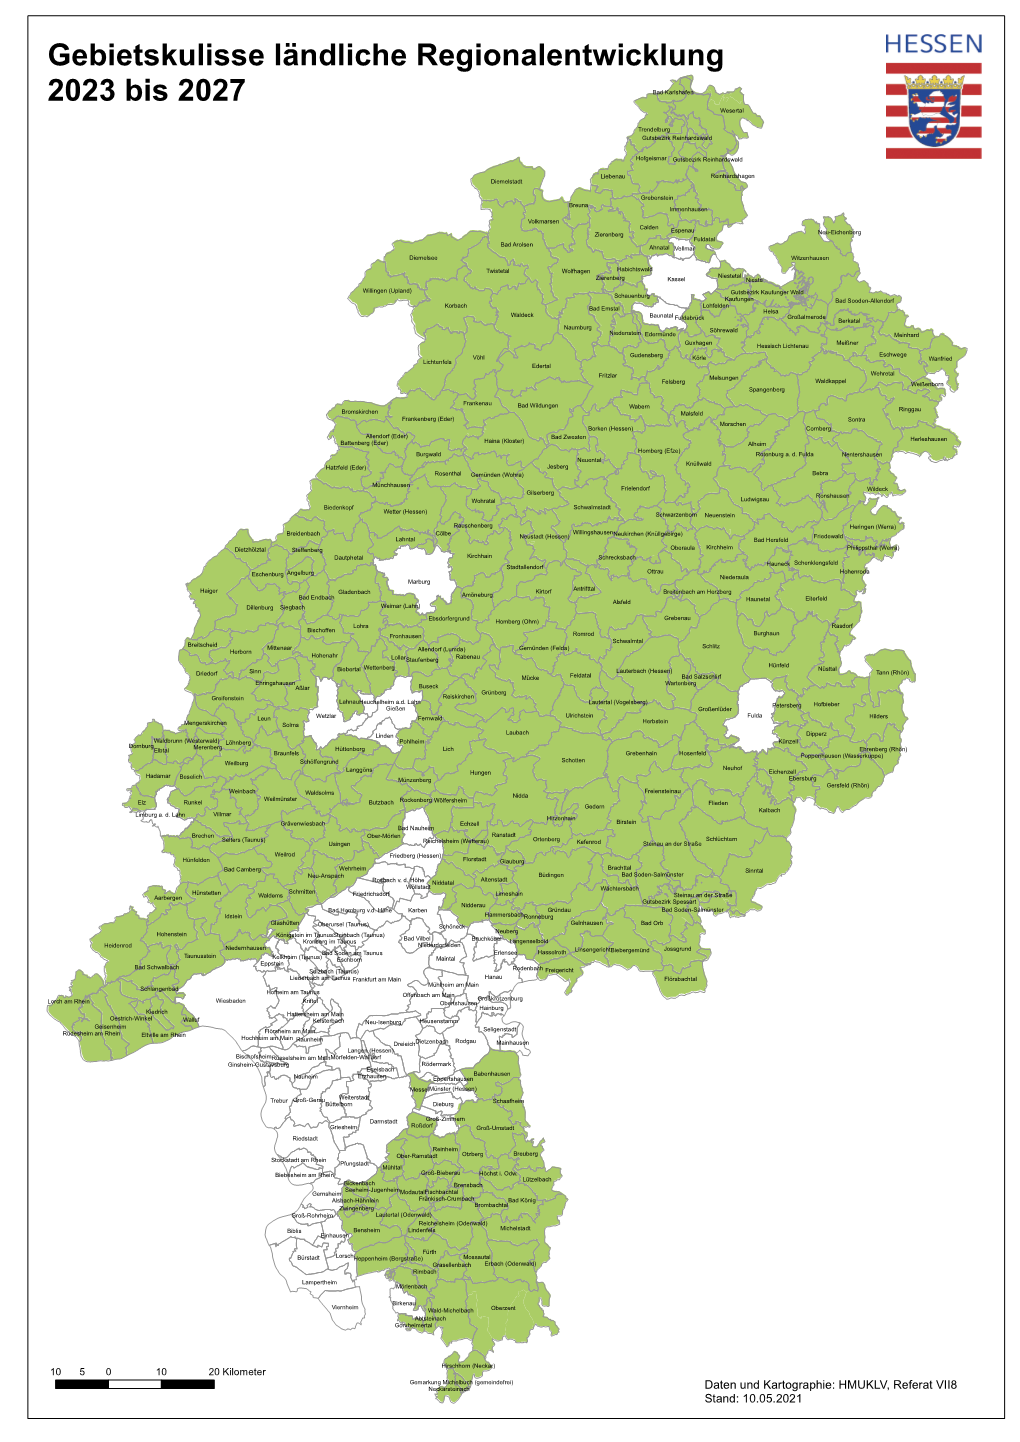 Gebietskulisse Ländliche Regionalentwicklung 2023 Bis 2027 Bad Karlshafen Wesertal